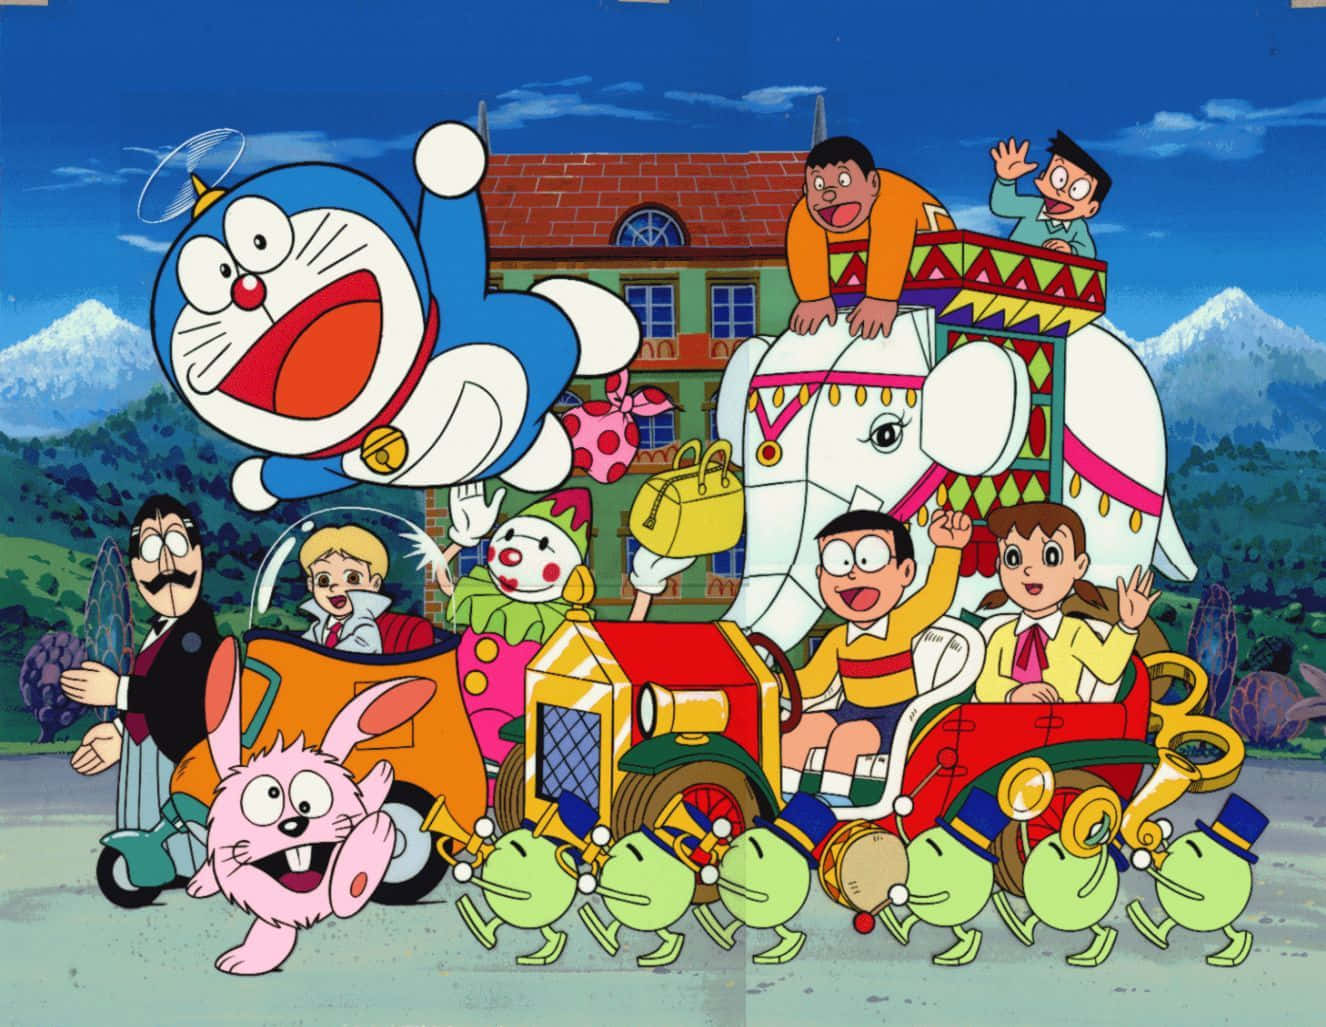 Doraemonbaggrund